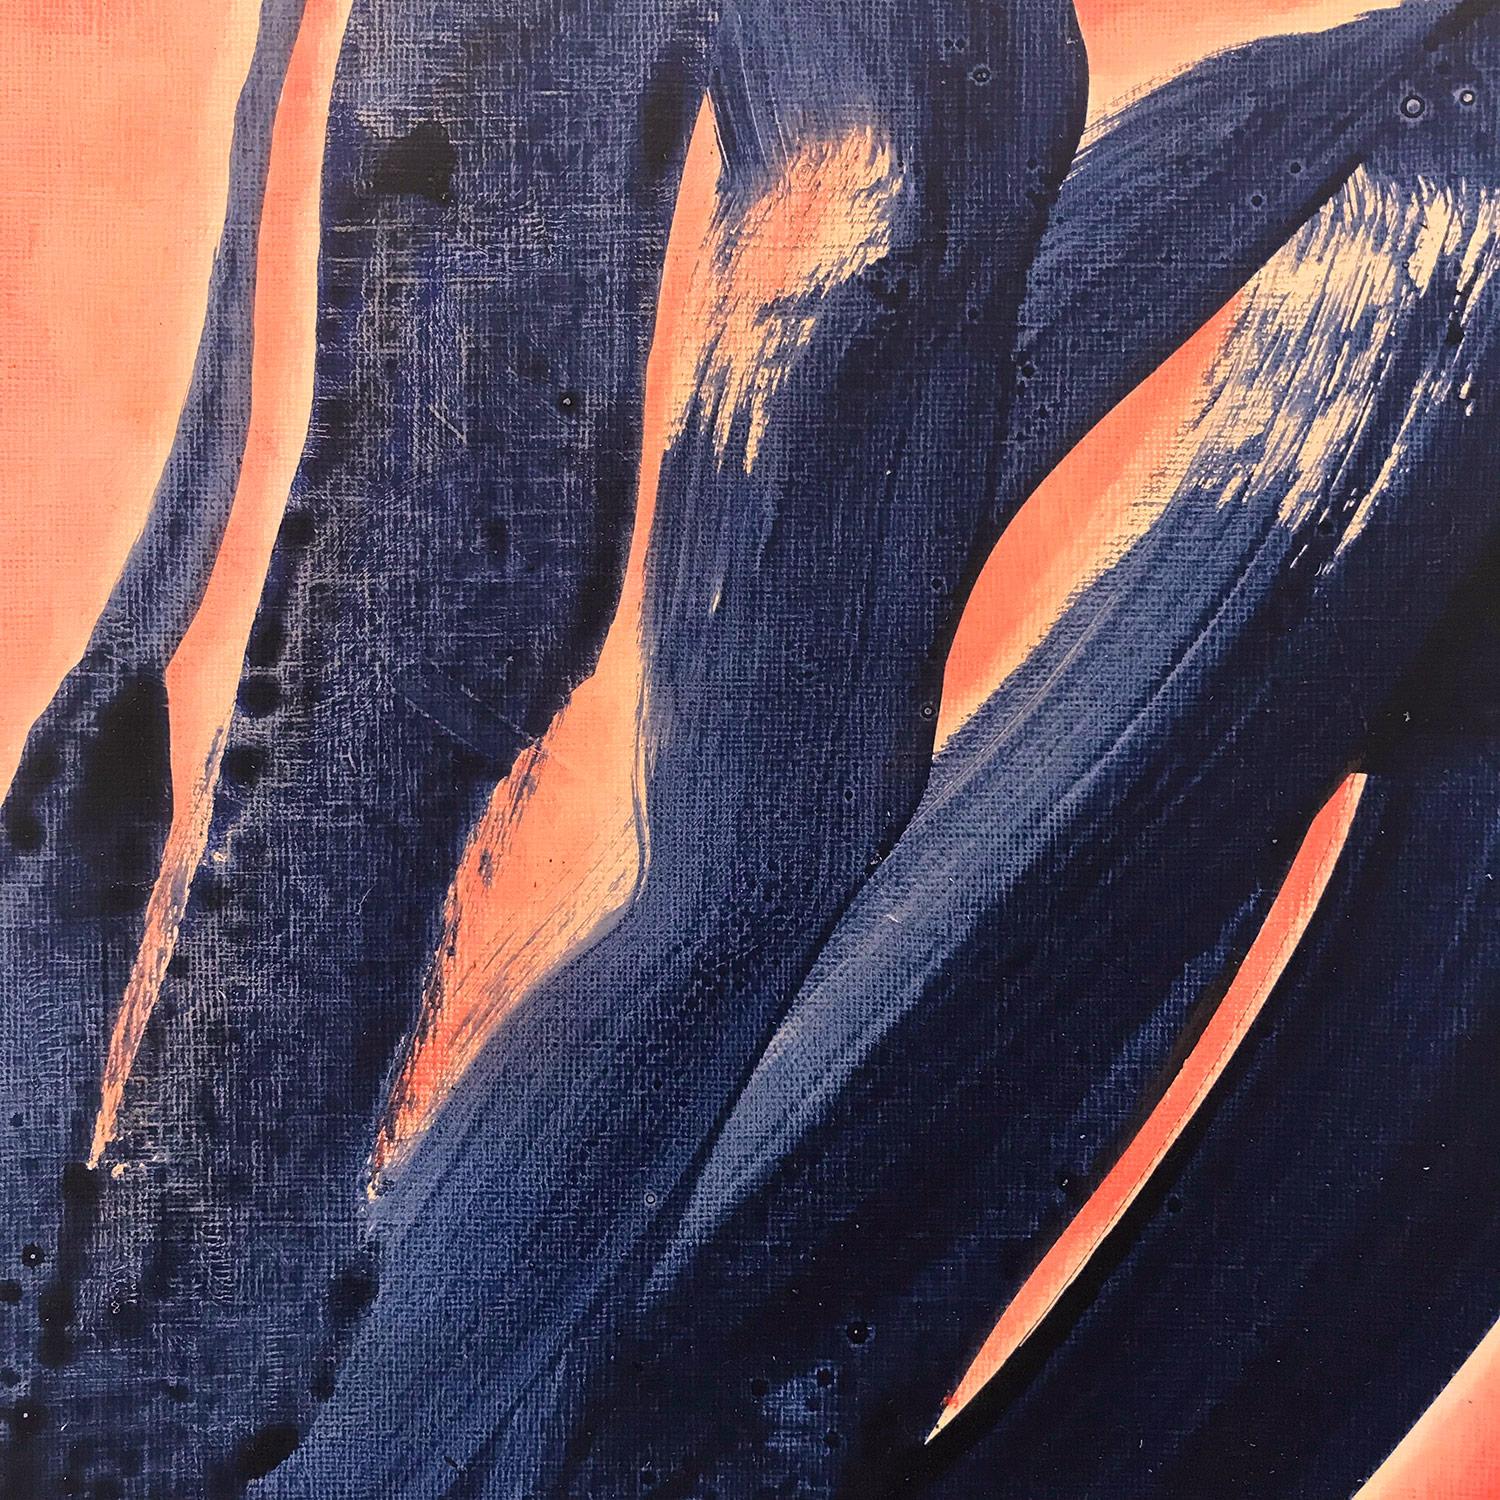 Abstraktes, gegenständliches, blaues Knotengemälde auf Papier, „Blue Knot No. 2“ – Painting von Wolfgang Leidhold